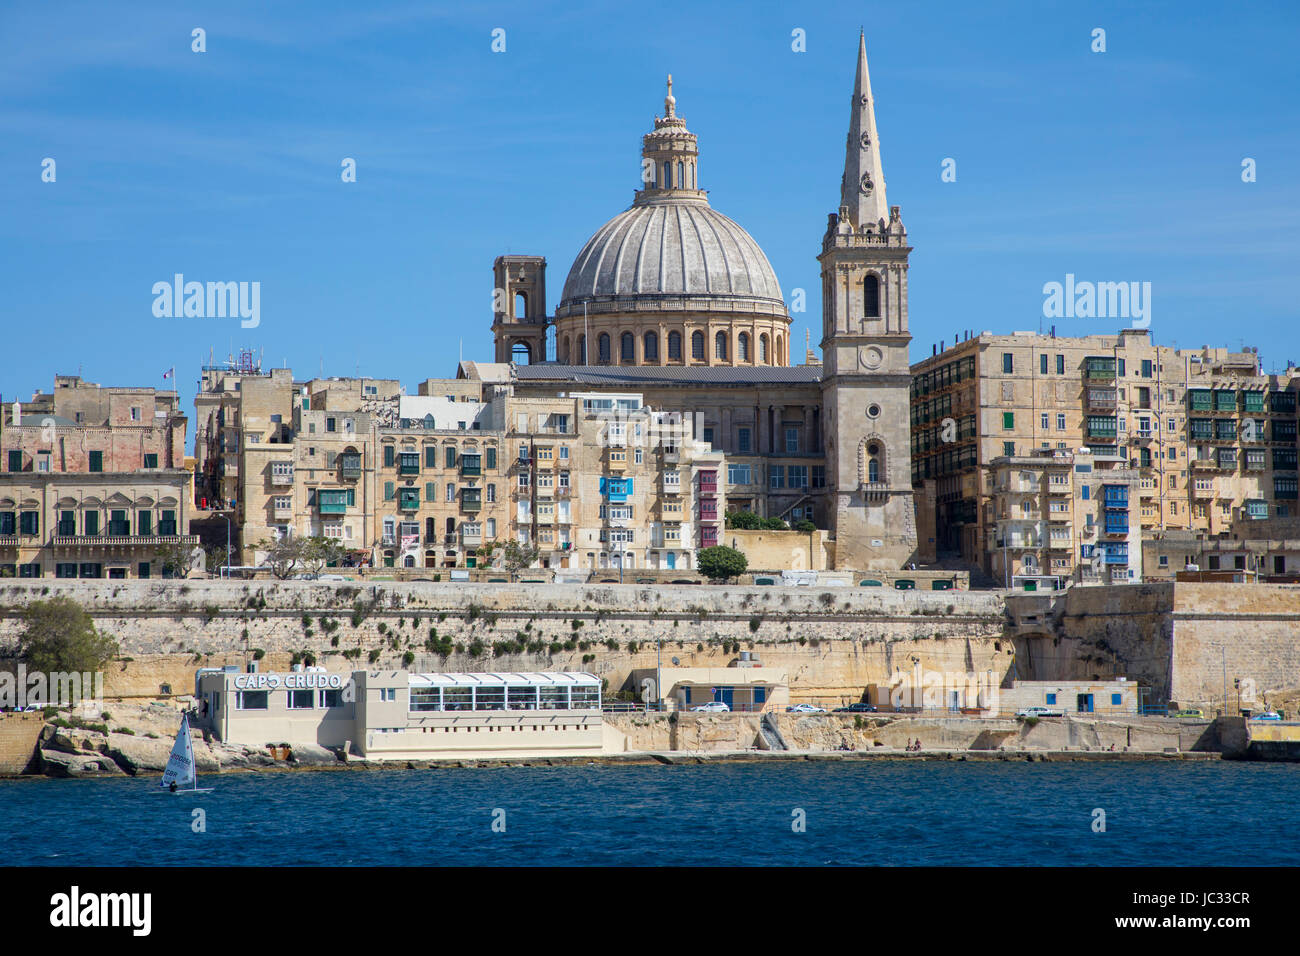 Skyline von Valetta, der Hauptstadt von Malta, Kuppel der Karmeliterkirche und Kirchturm von St. Pauls anglikanische Pro Kathedrale Kirche, Stockfoto